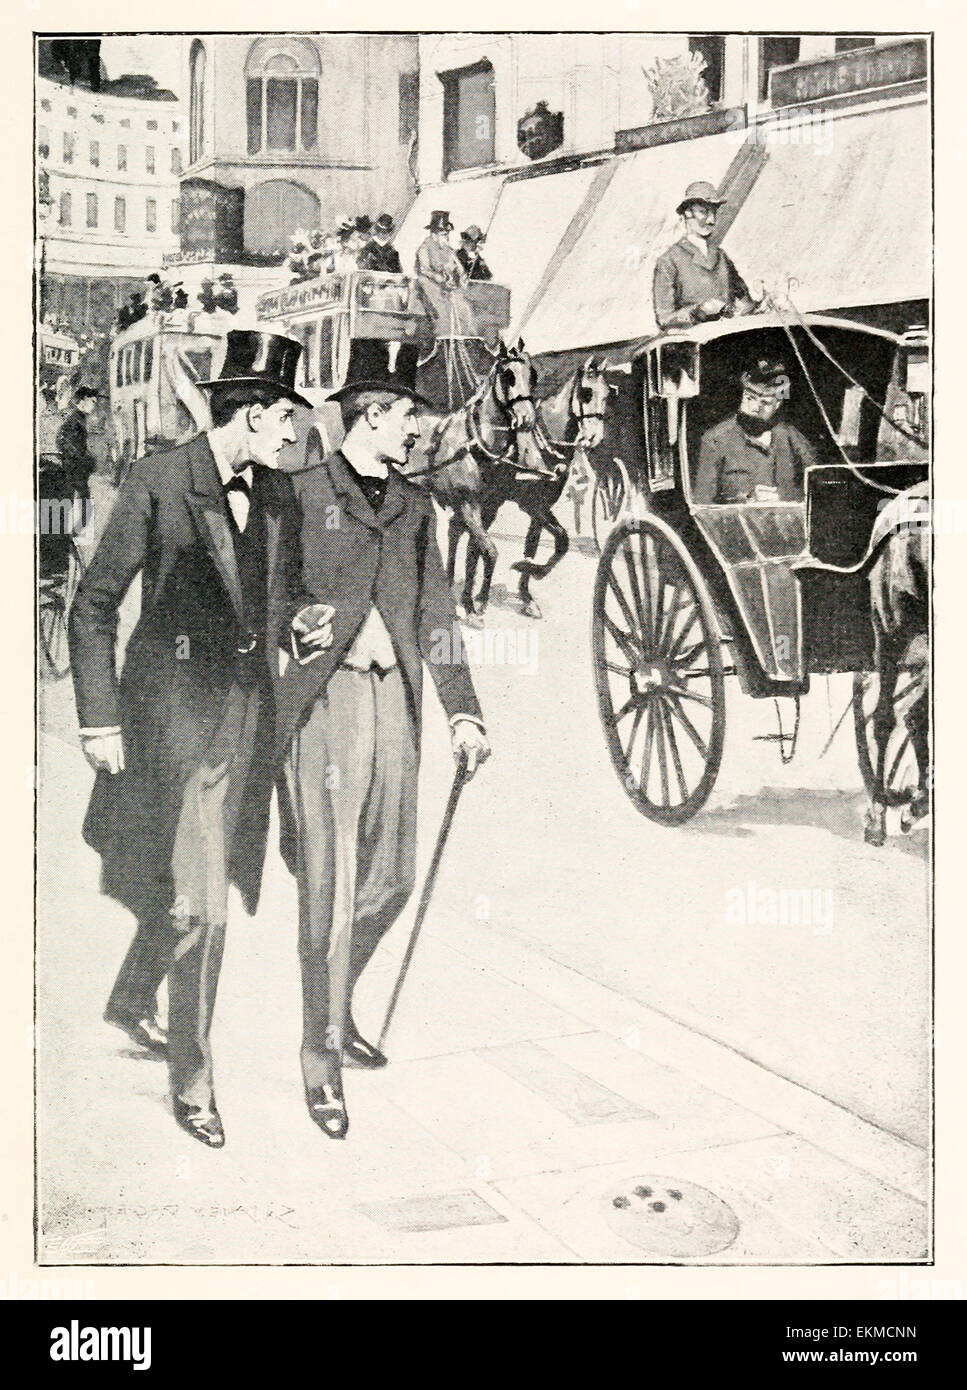 "Es ist unser Mann, Watson! Kommen Sie vorbei! "- von"Hound of the Baskervilles"von Doyle (1859-1930). Illustration von Sidney Paget (1860-1908). Siehe Beschreibung für mehr Informationen. Stockfoto